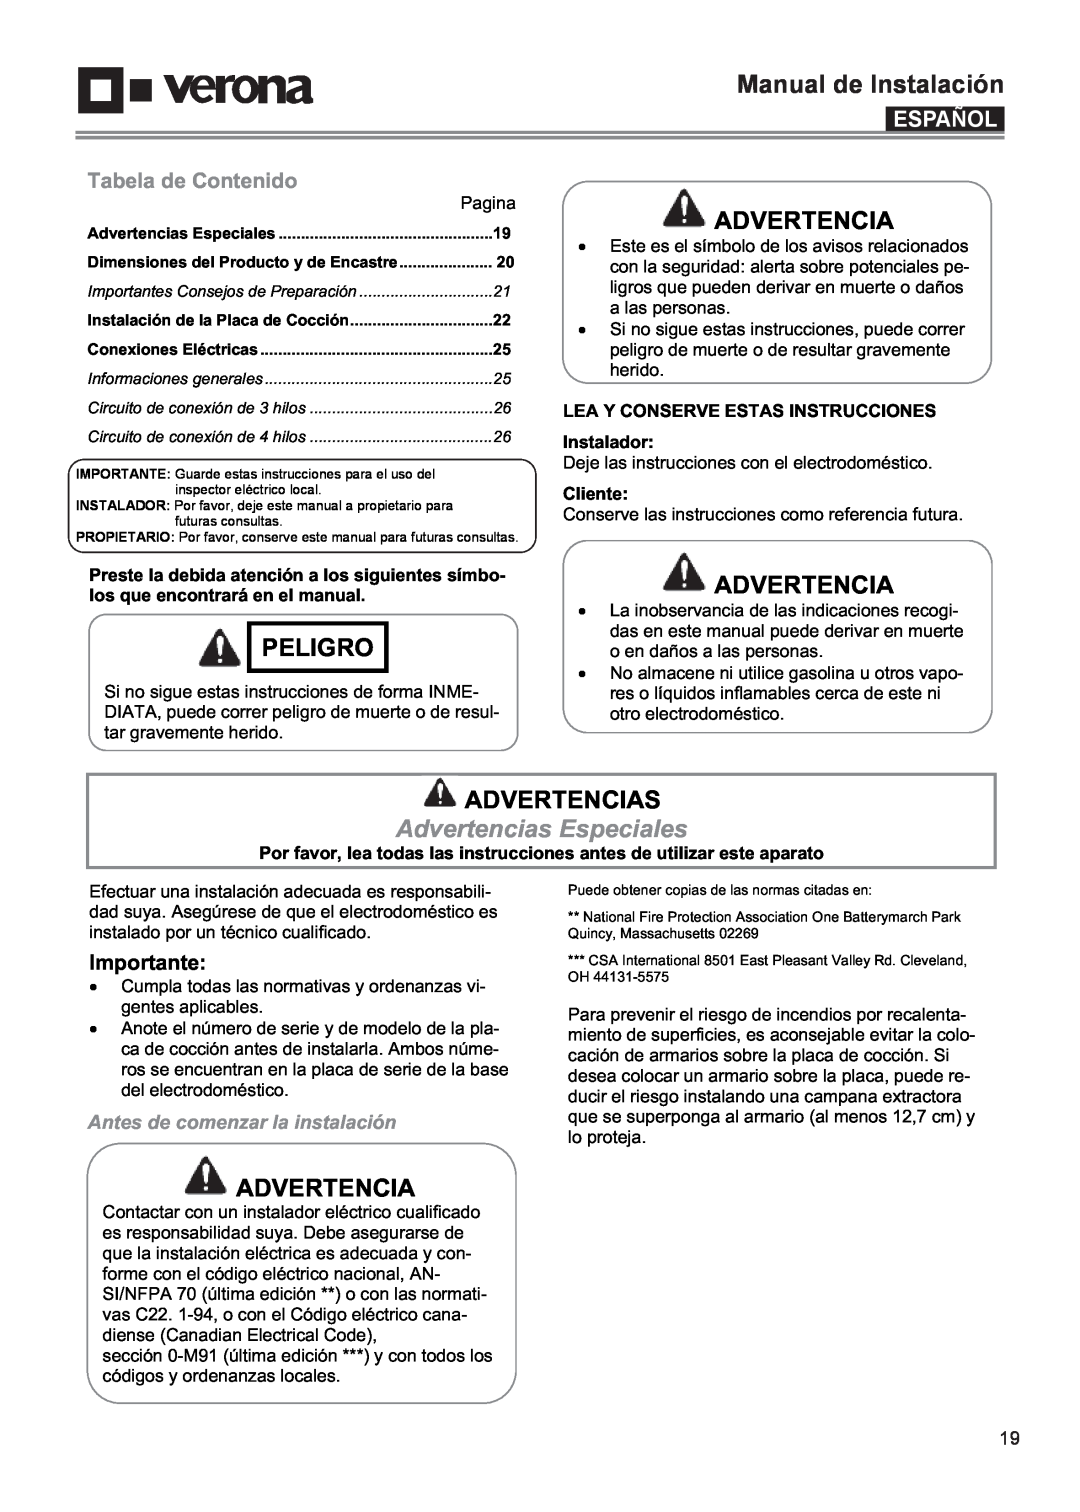 Verona VECTIM365 Manual de Instalación, Peligro, Advertencias Especiales, Español, Tabela de Contenido, Importante 